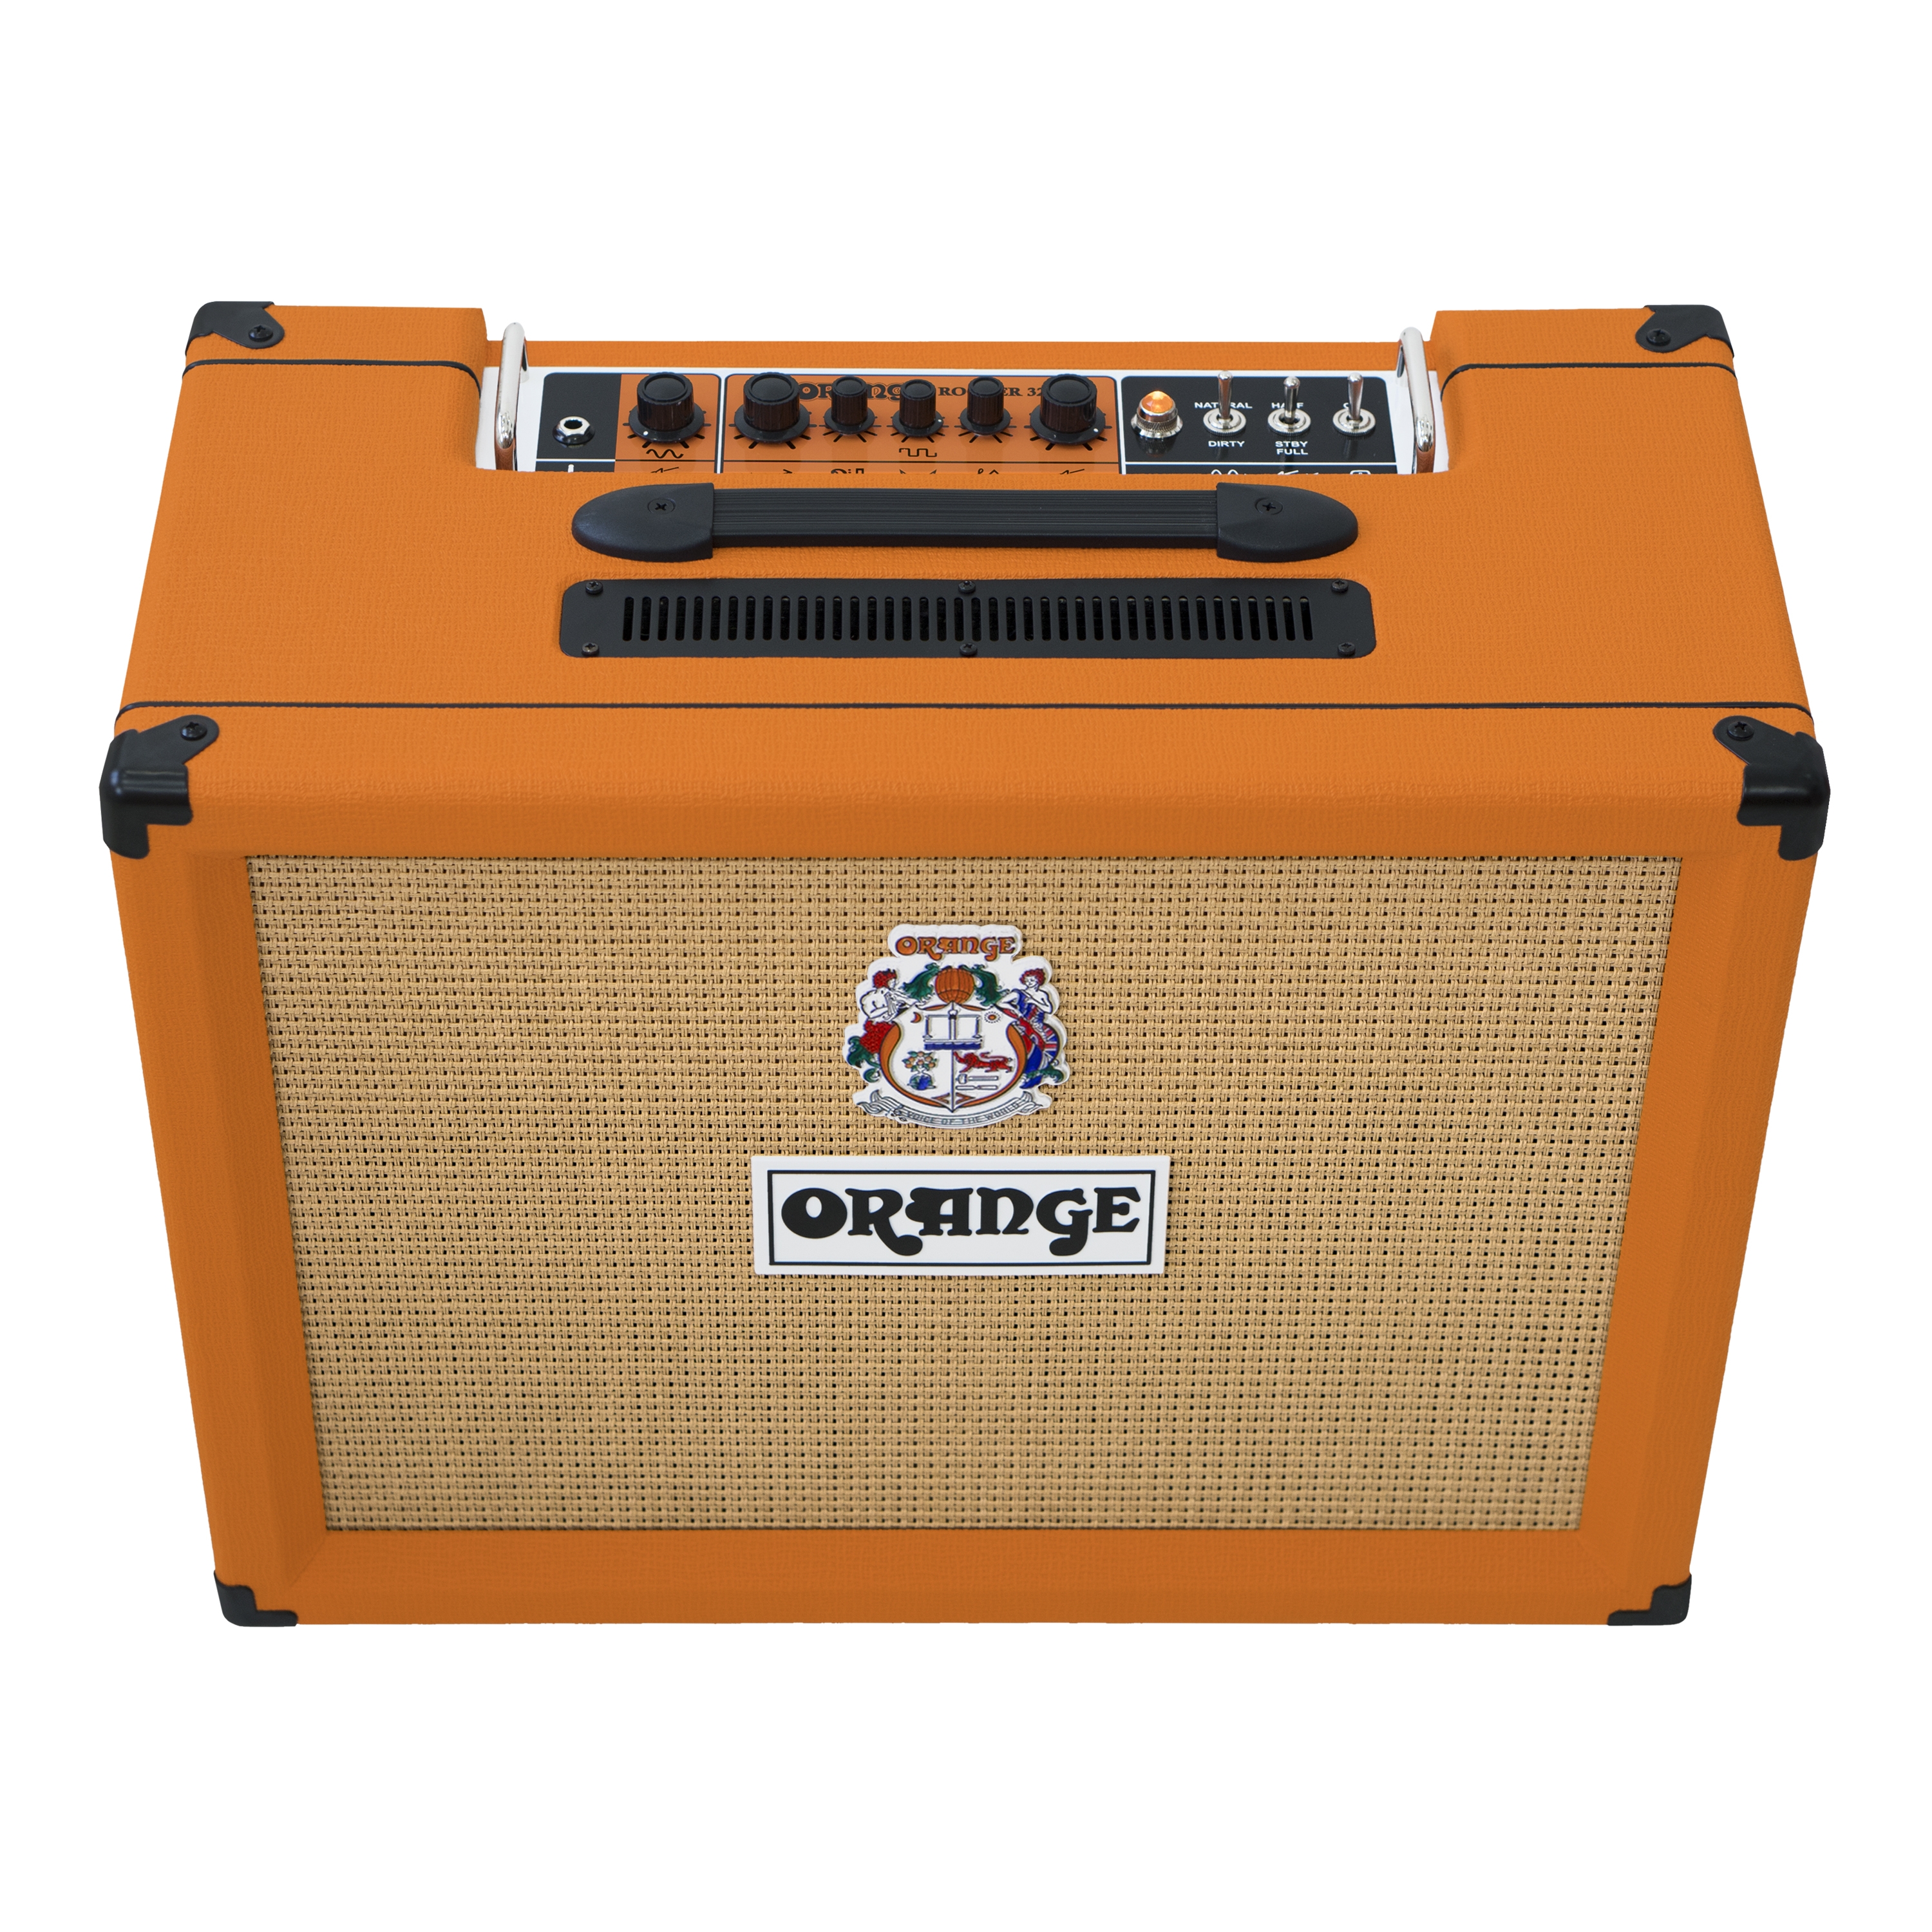 "Orange Rocker 32 Class A 2x10"" 30w à 15 w - Ampli guitare électrique à lampes"